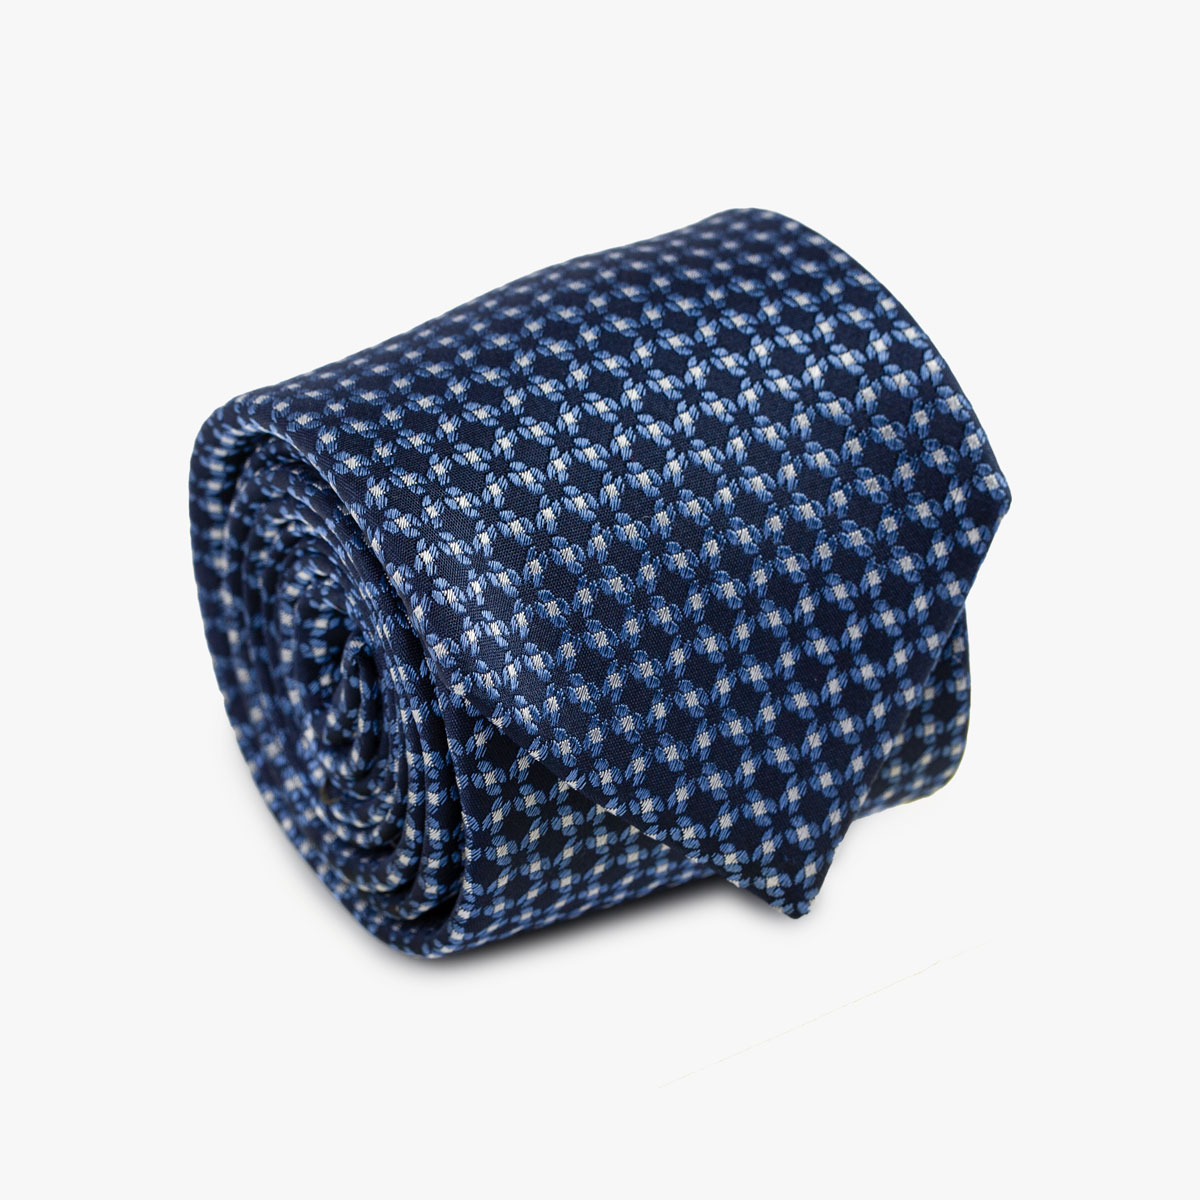 Aufgerollte Krawatte mit blauem Muster in dunkelblau